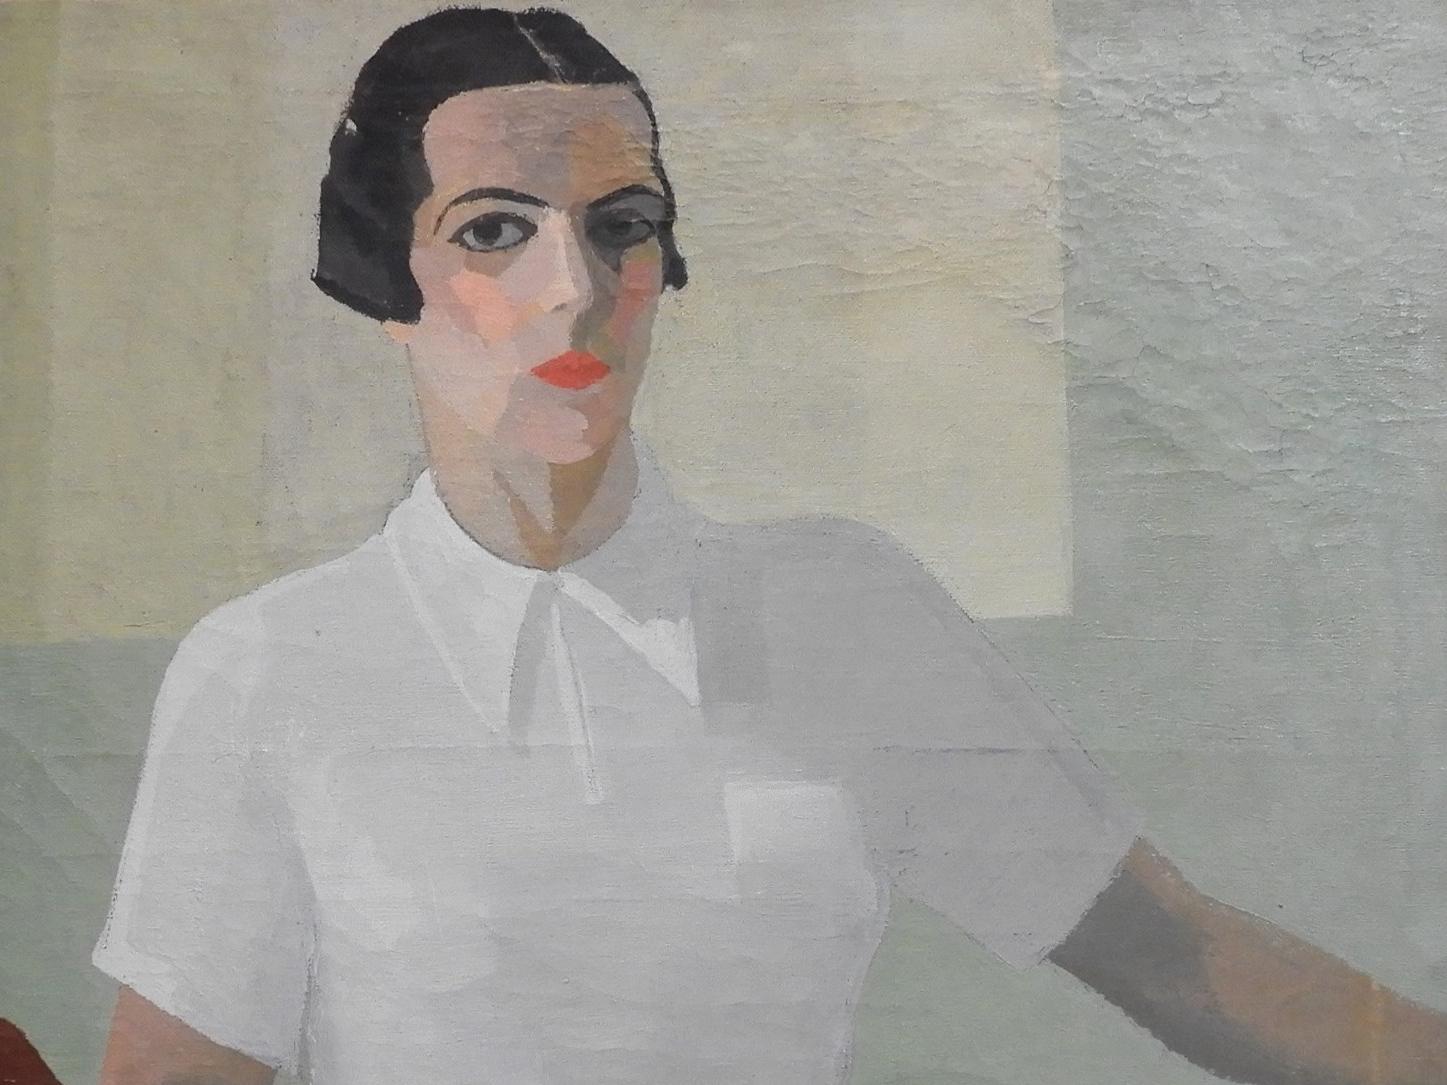 Pintura que representa a una mujer con pelo corto, negro, y blusa blanca.